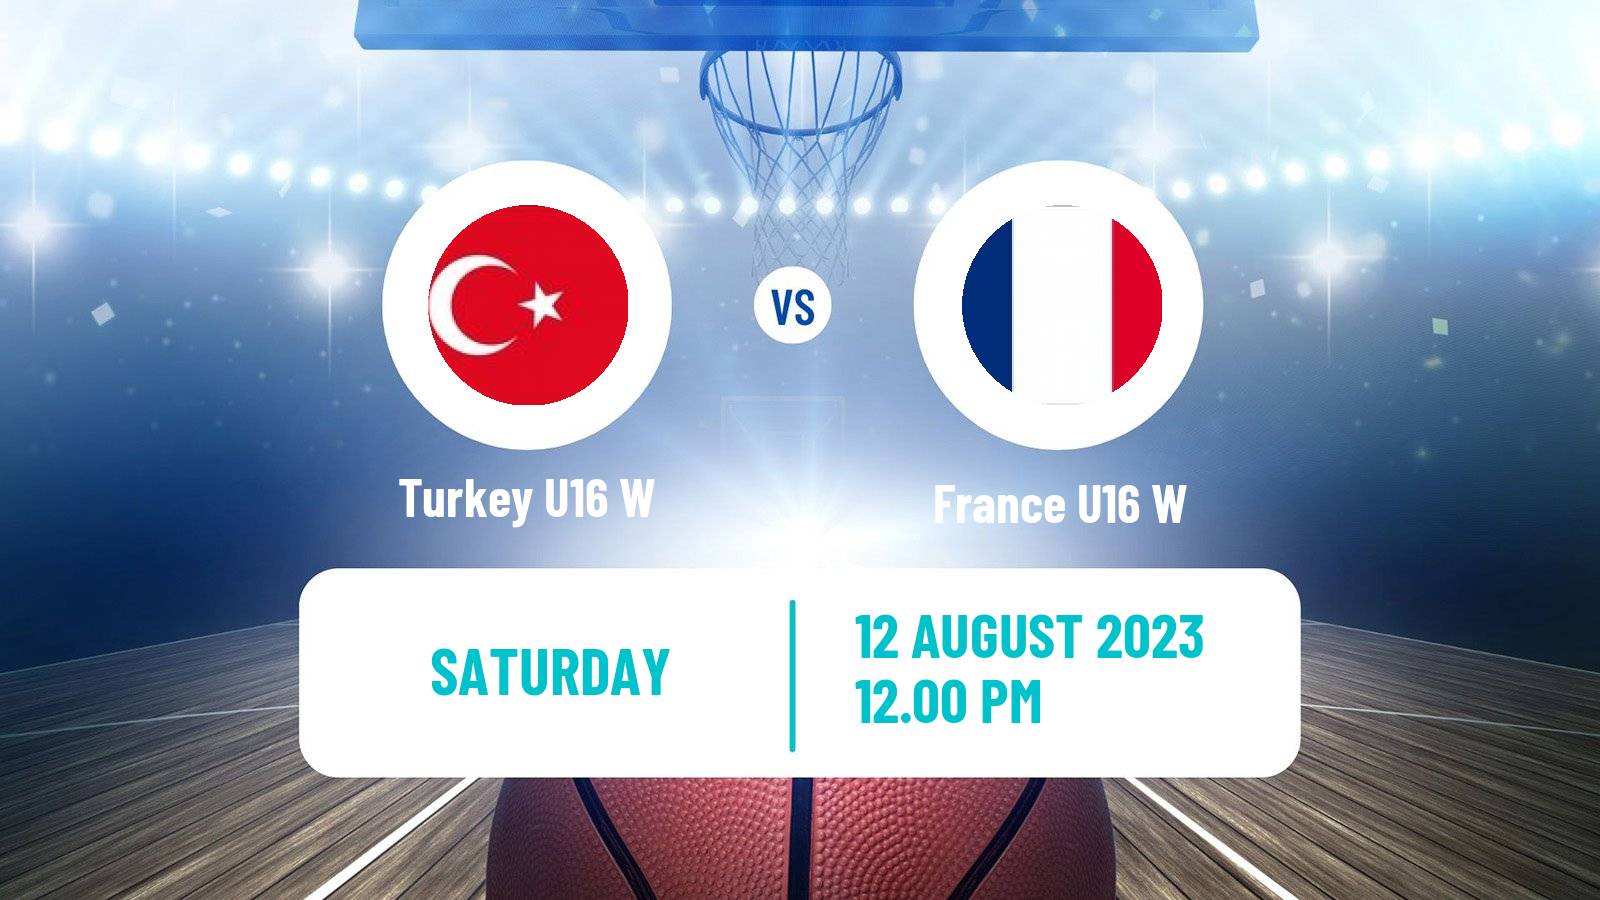 Basketball European Championship U16 Basketball Women Turkey U16 W - France U16 W